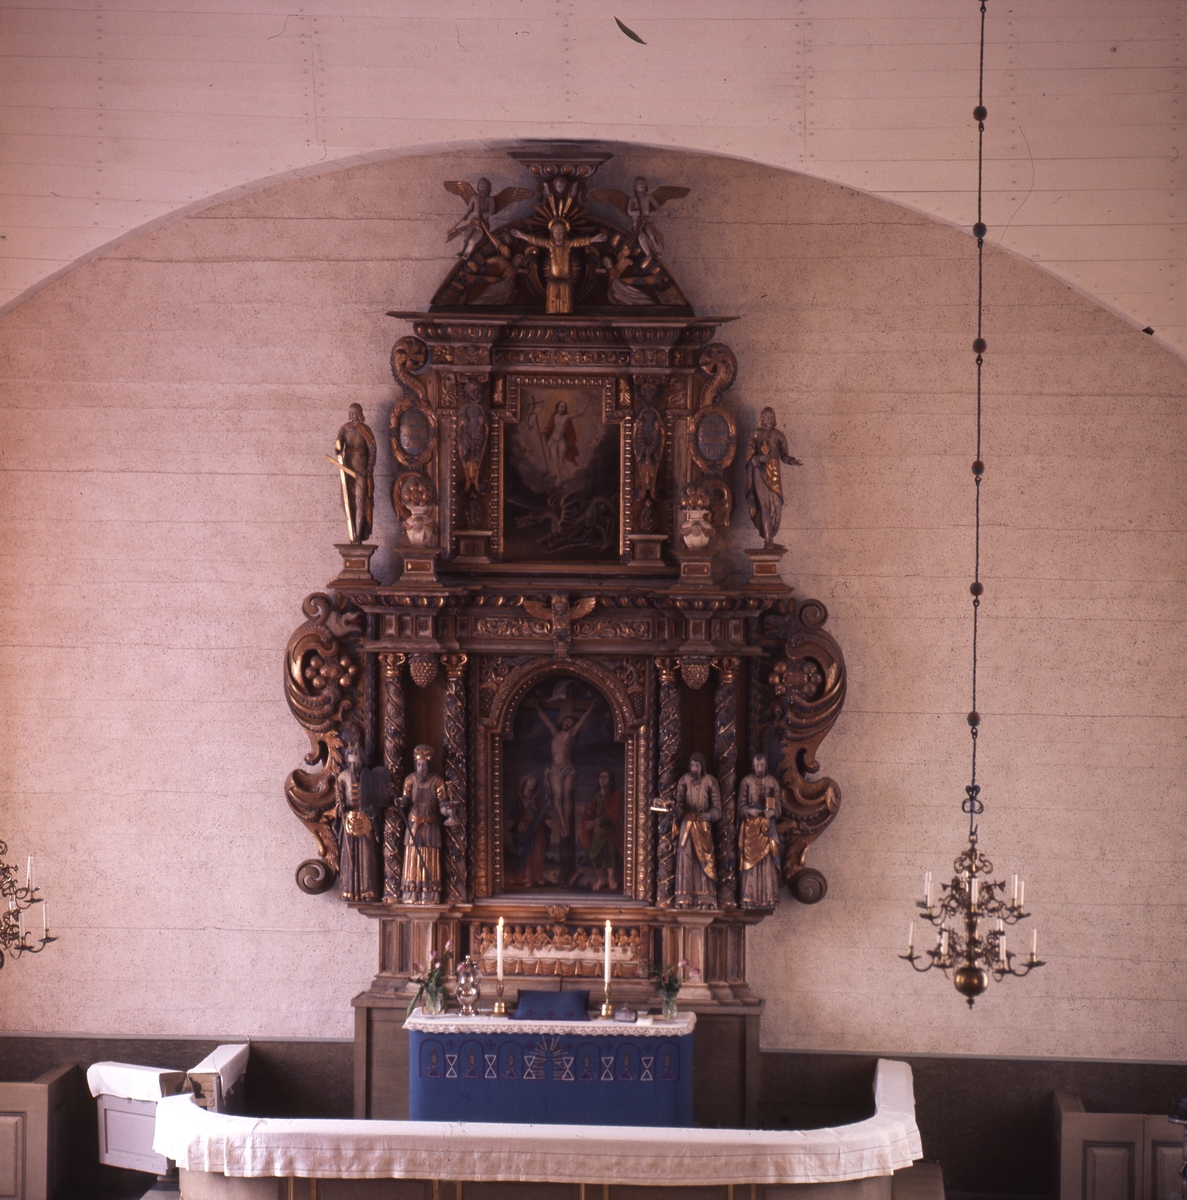 En förgylld altaruppsättning med målningar och skulpturer, Solfs kyrka i Finland.